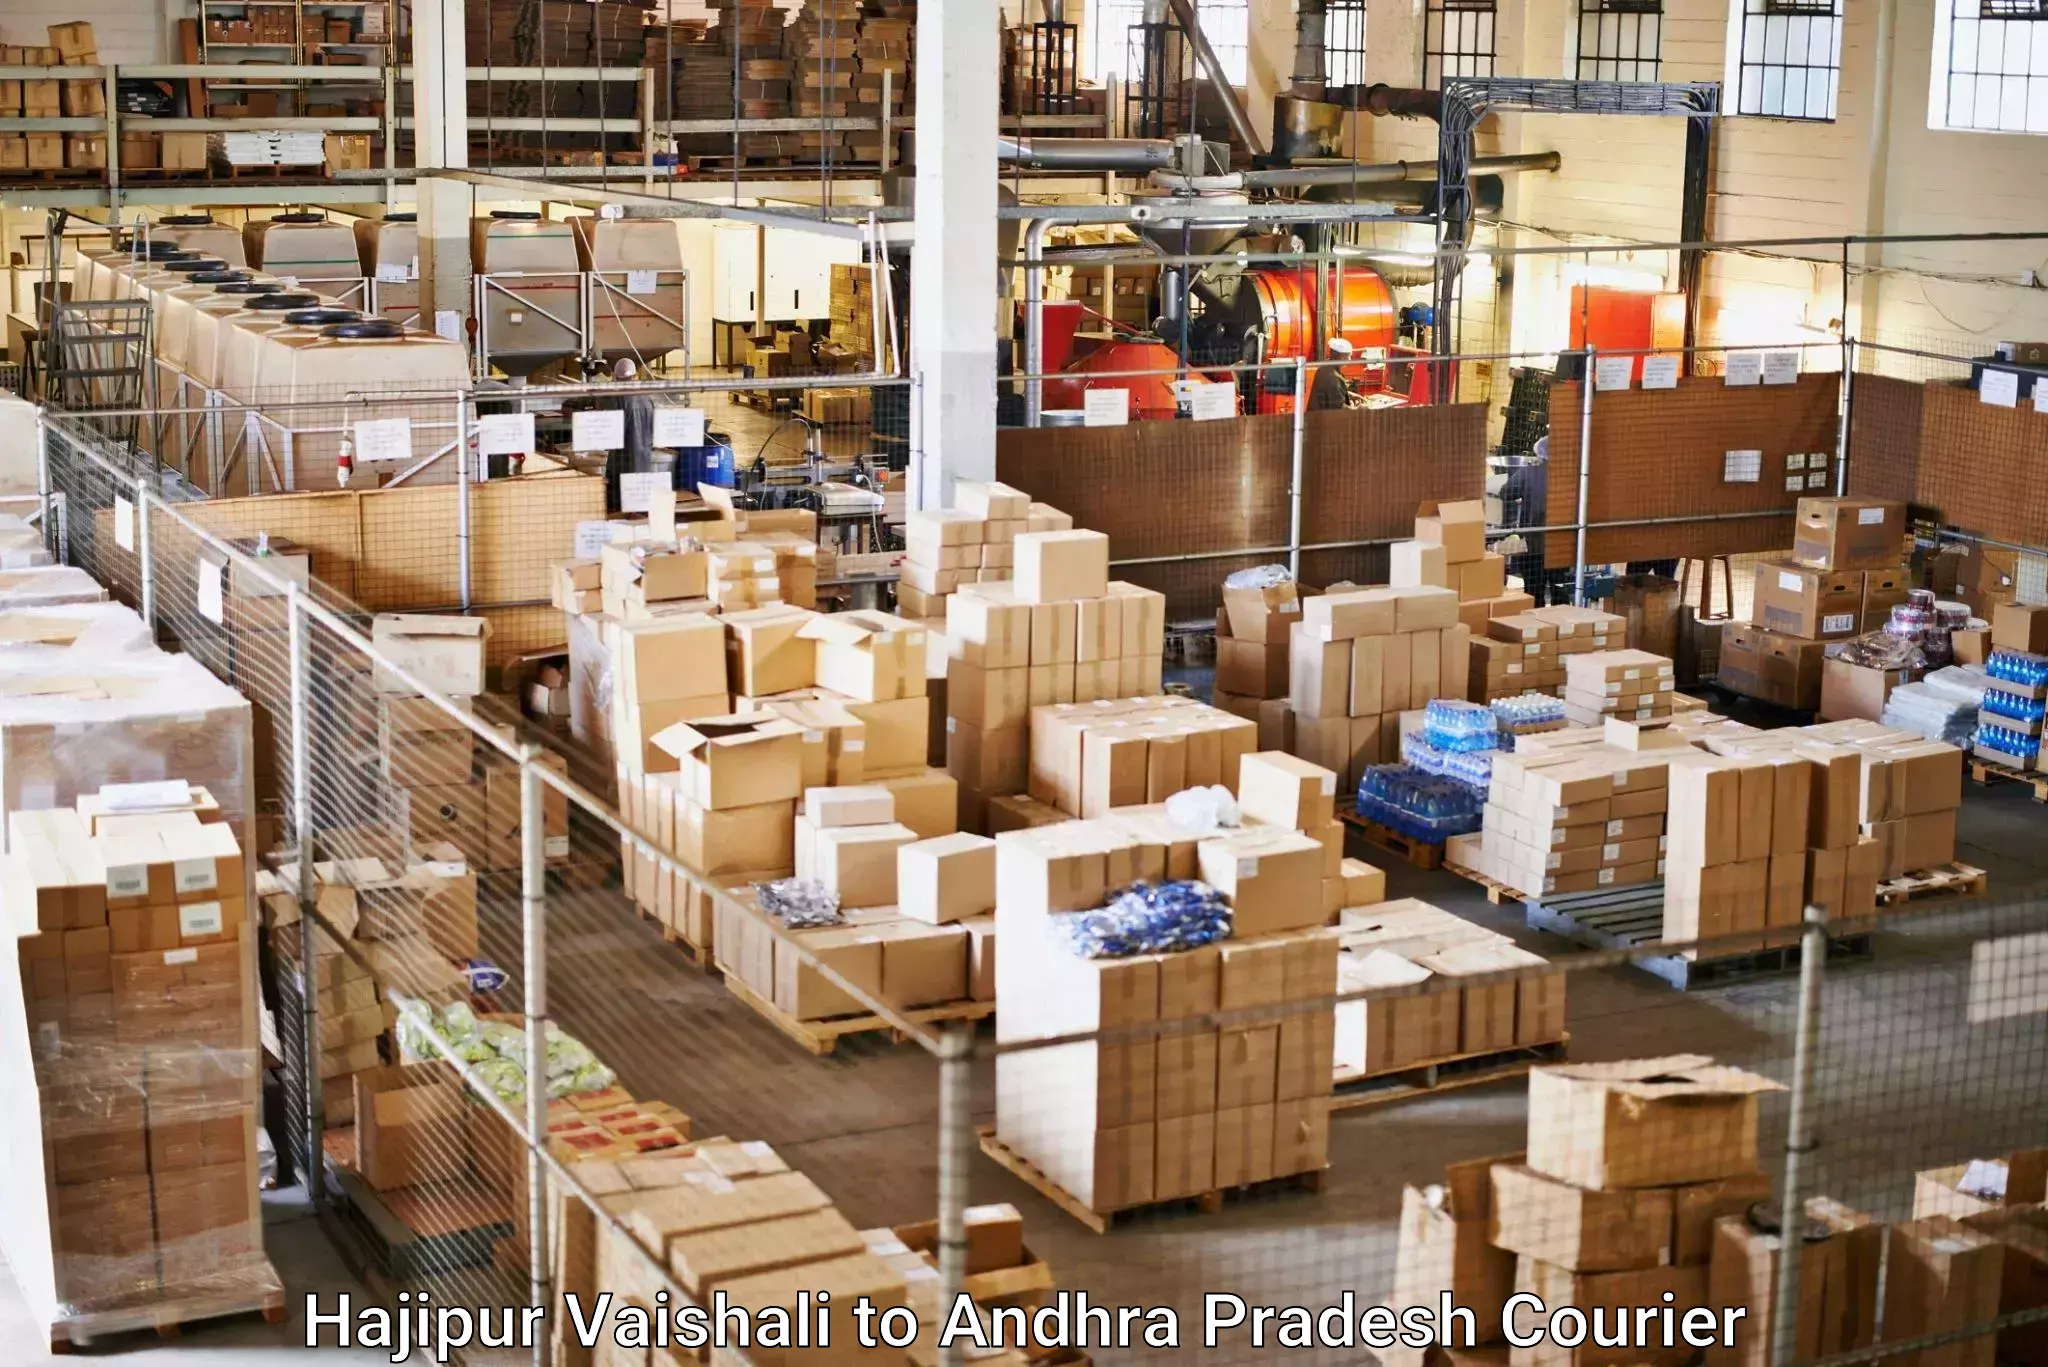 Package delivery network Hajipur Vaishali to Yellamanchili